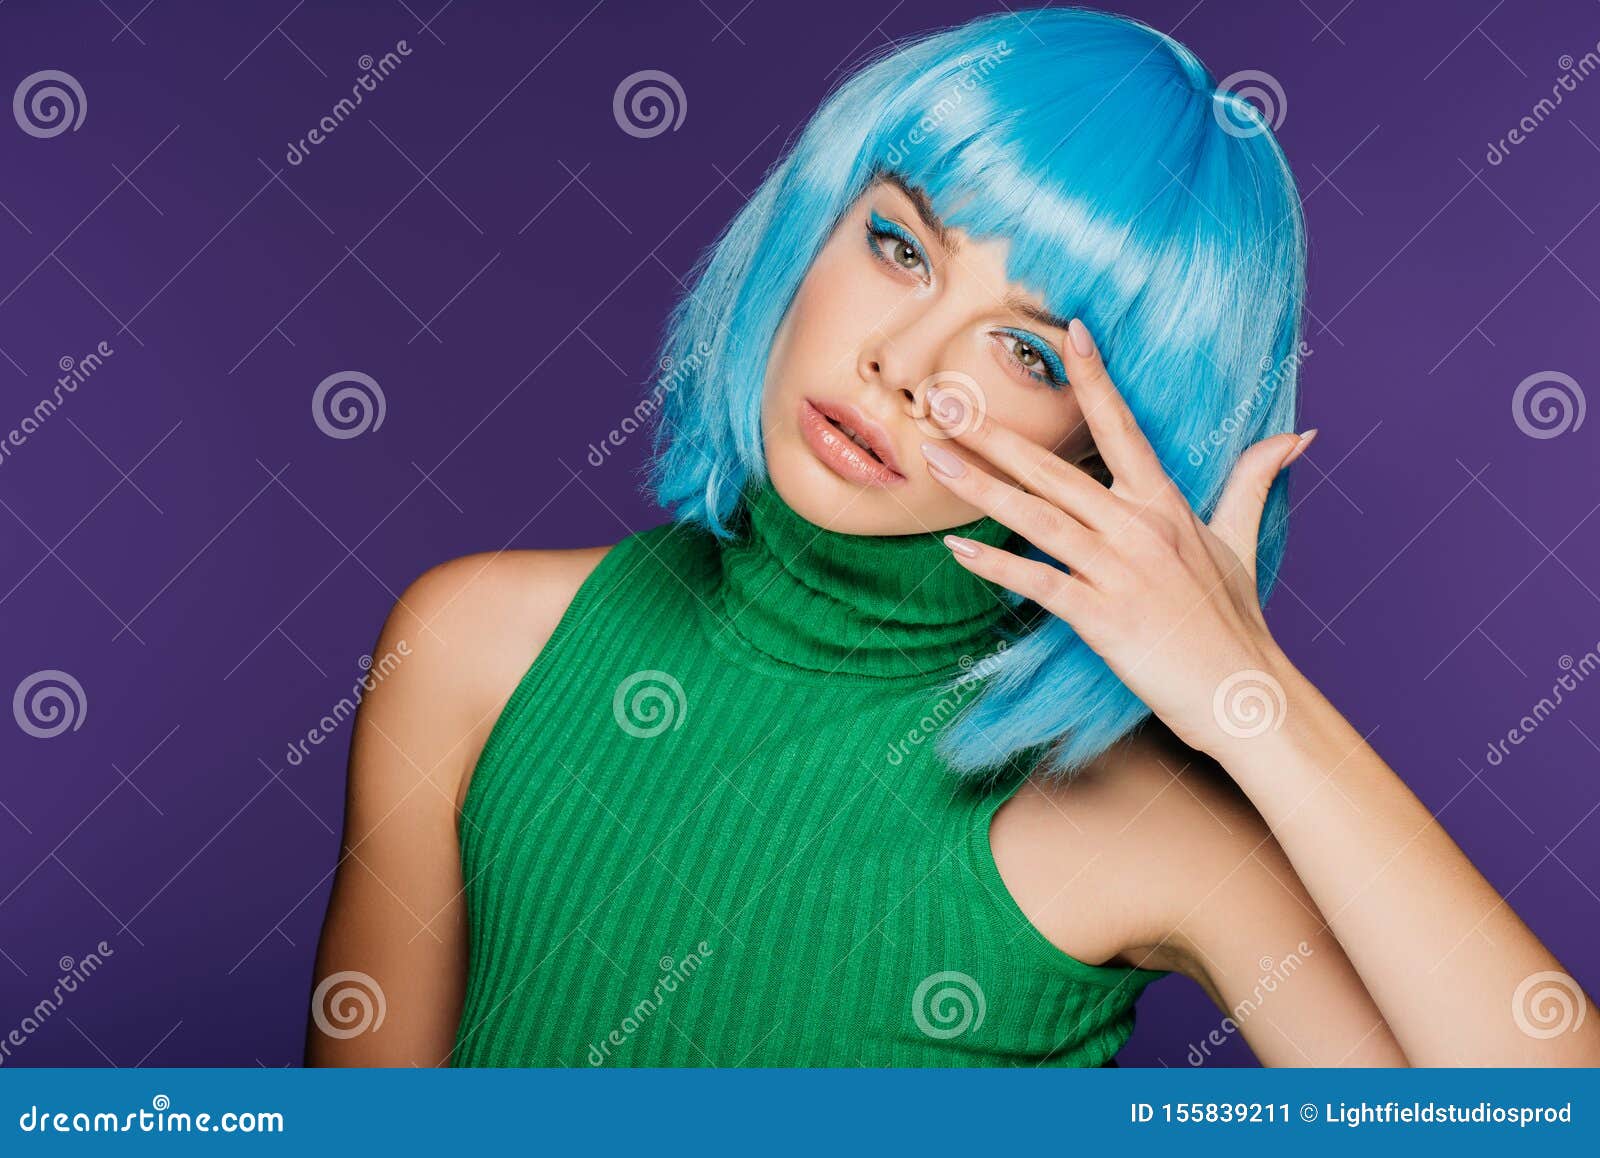 girl blue hair meme